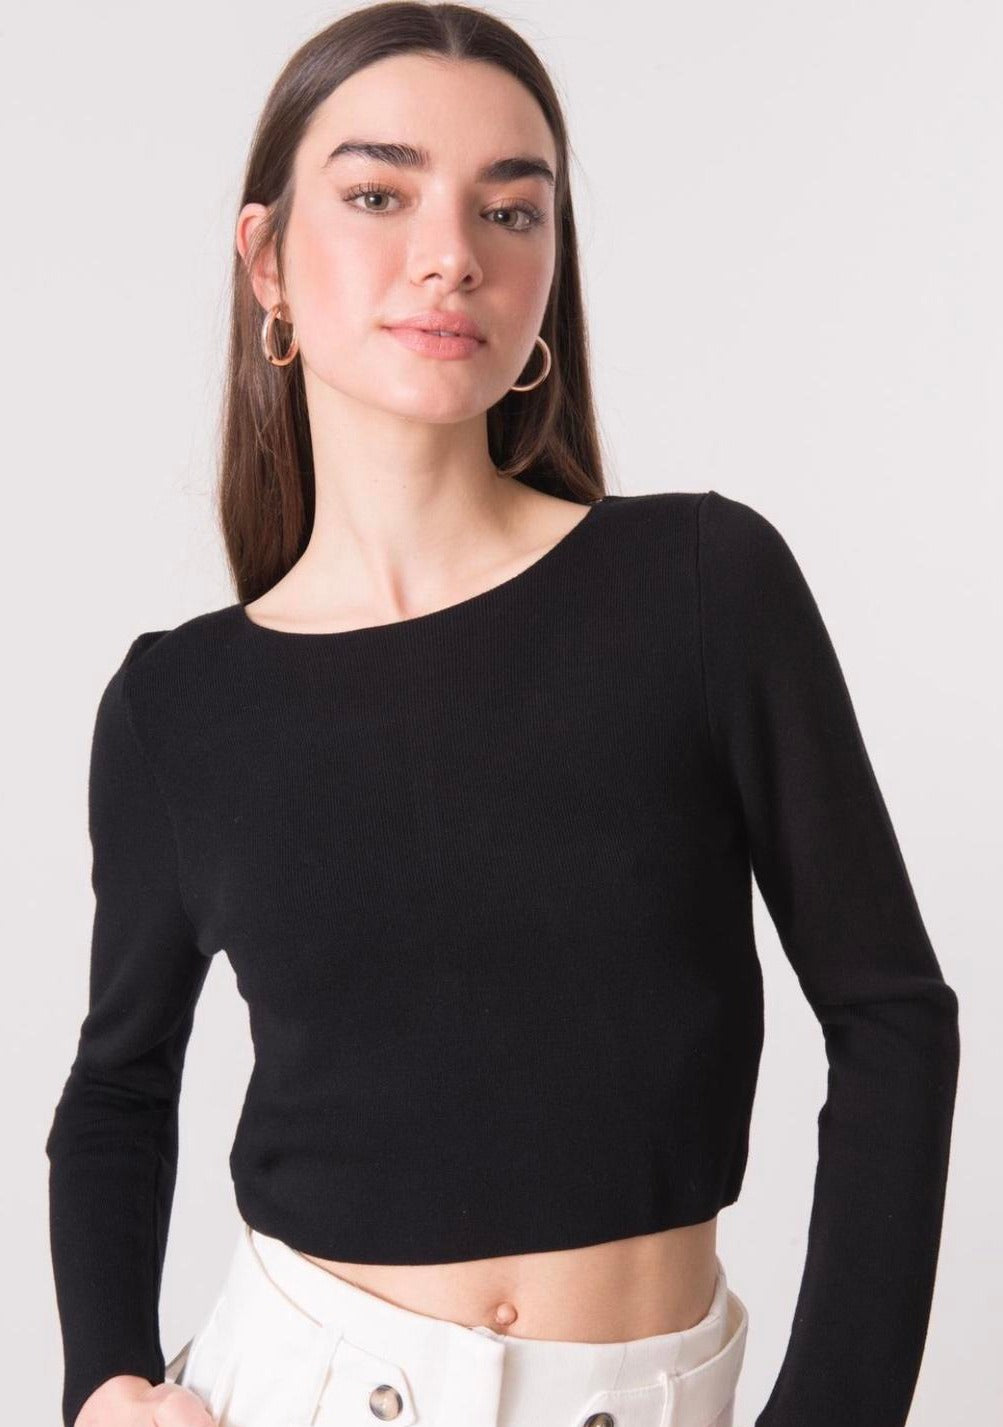 Дамска блуза LAMARA  https://bvseductive.com/products/дамска-блуза-lamara  50 % вискоза 50 % акрил модерна дамска блуза в черен цвят моделът е със секси &nbsp;изрязан гръб и синджир твоят избор за впечатляваща визия